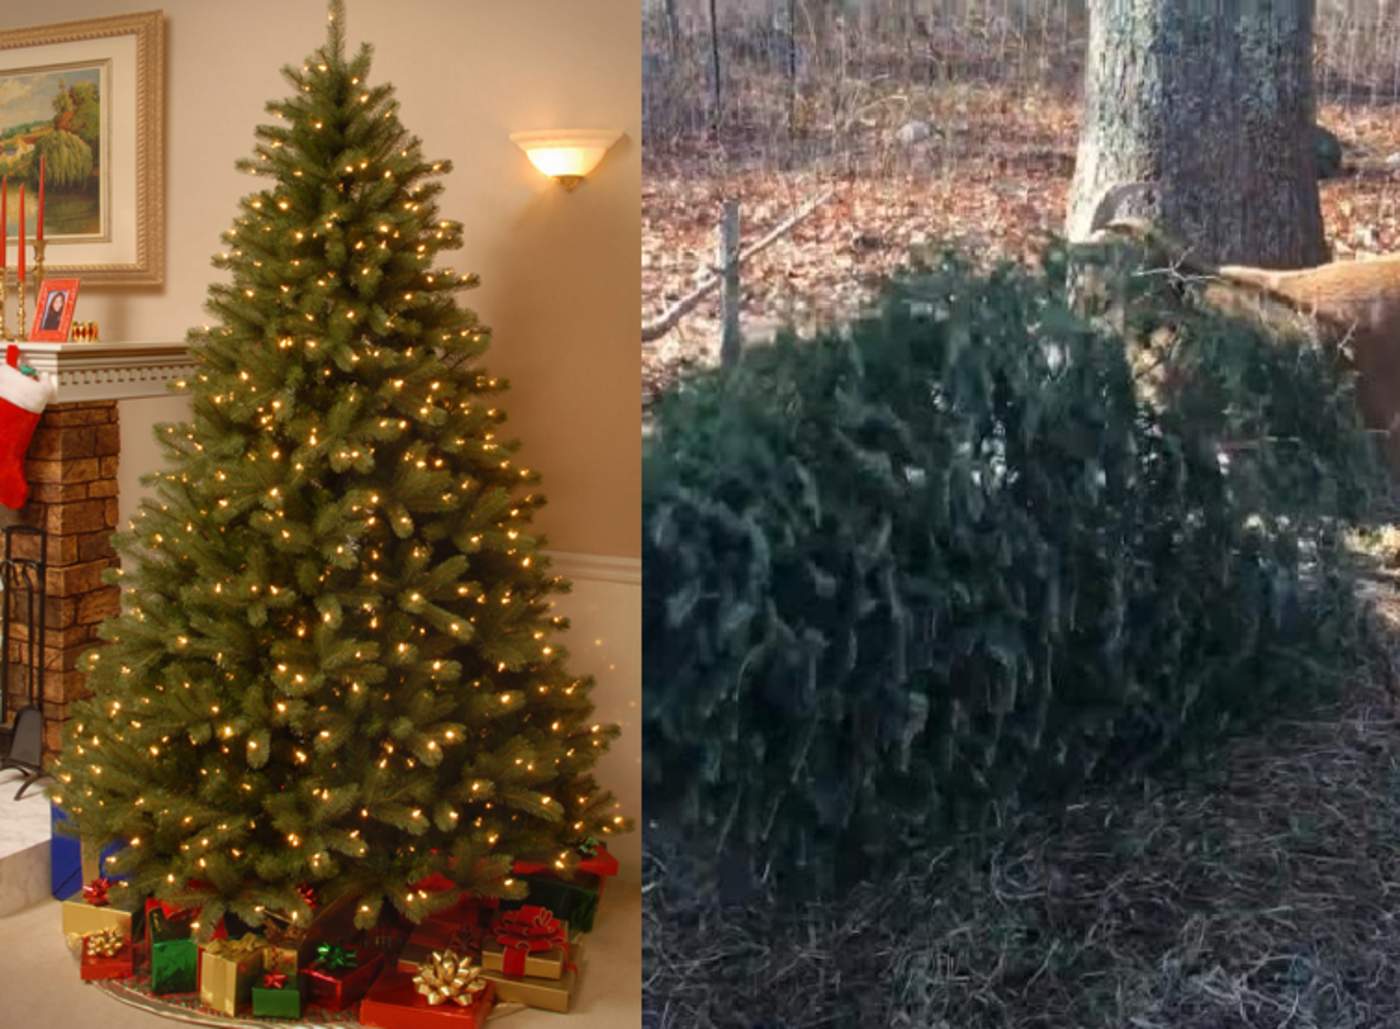 Reciclan árboles de navidad usándolos como comida para cabras